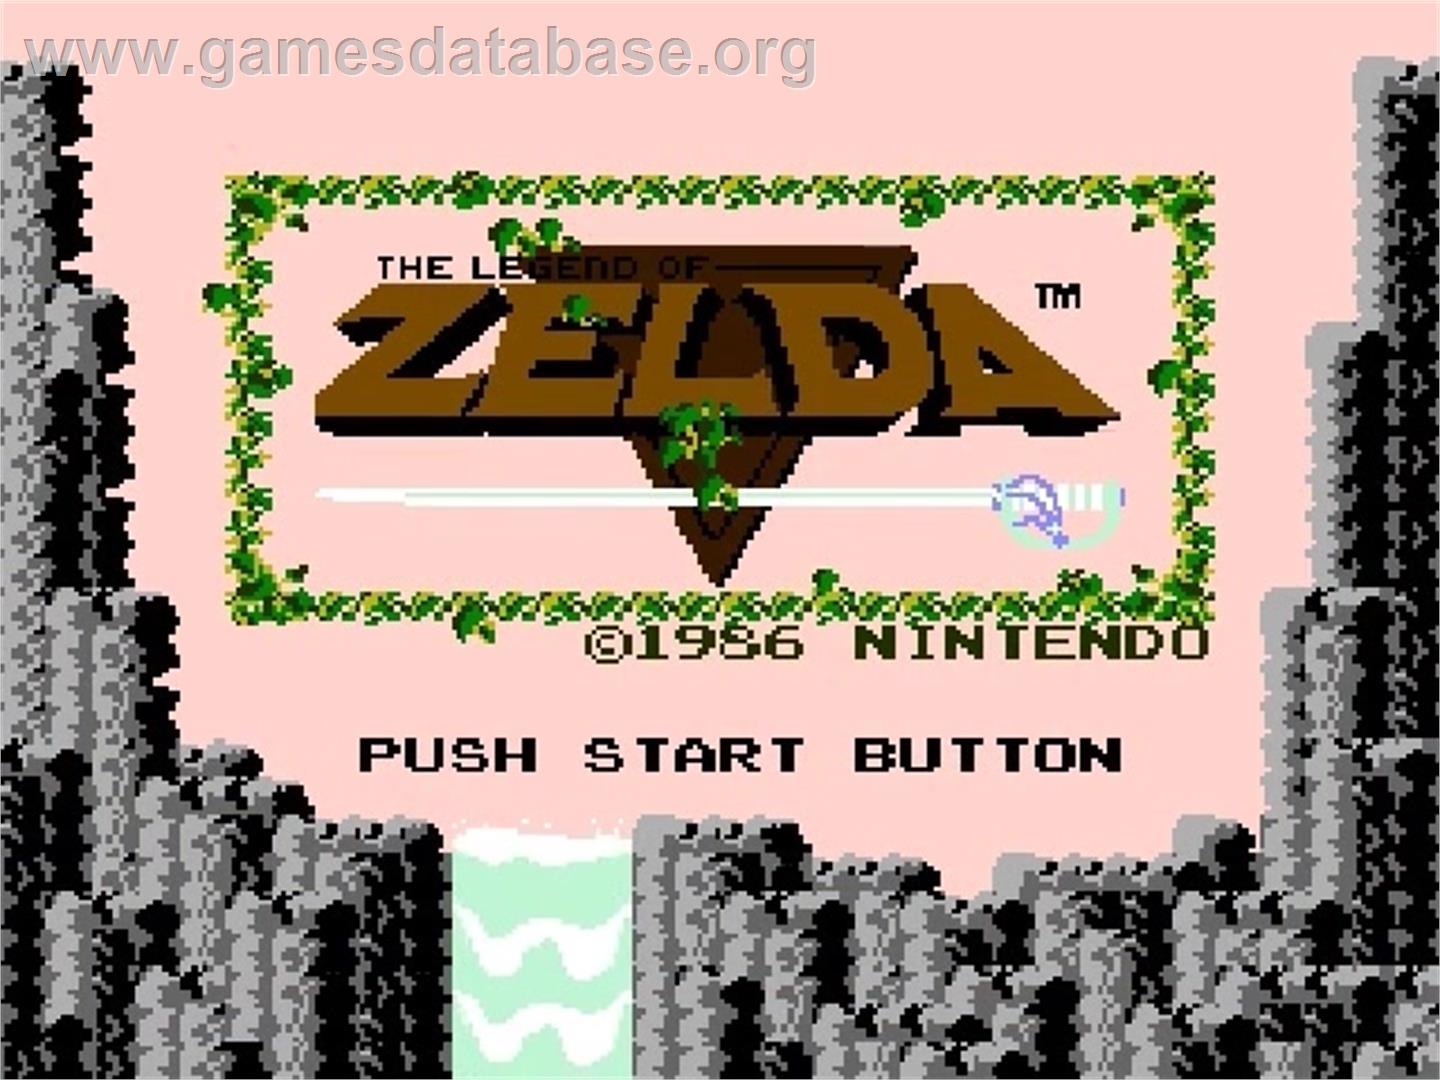 Legend of Zelda - Nintendo NES - Artwork - Title Screen